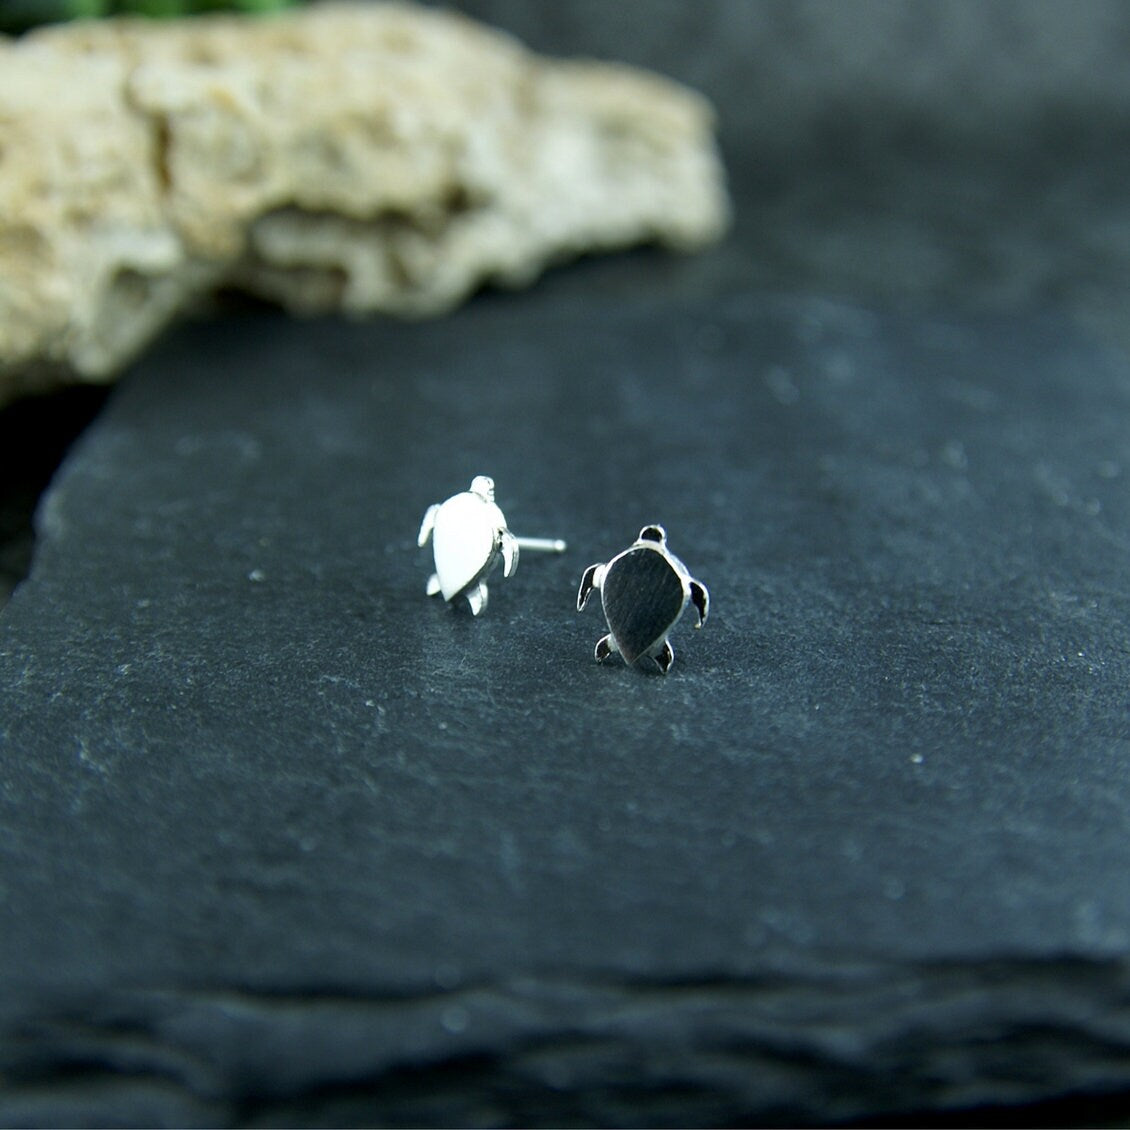 Sterling silver turtle earrings